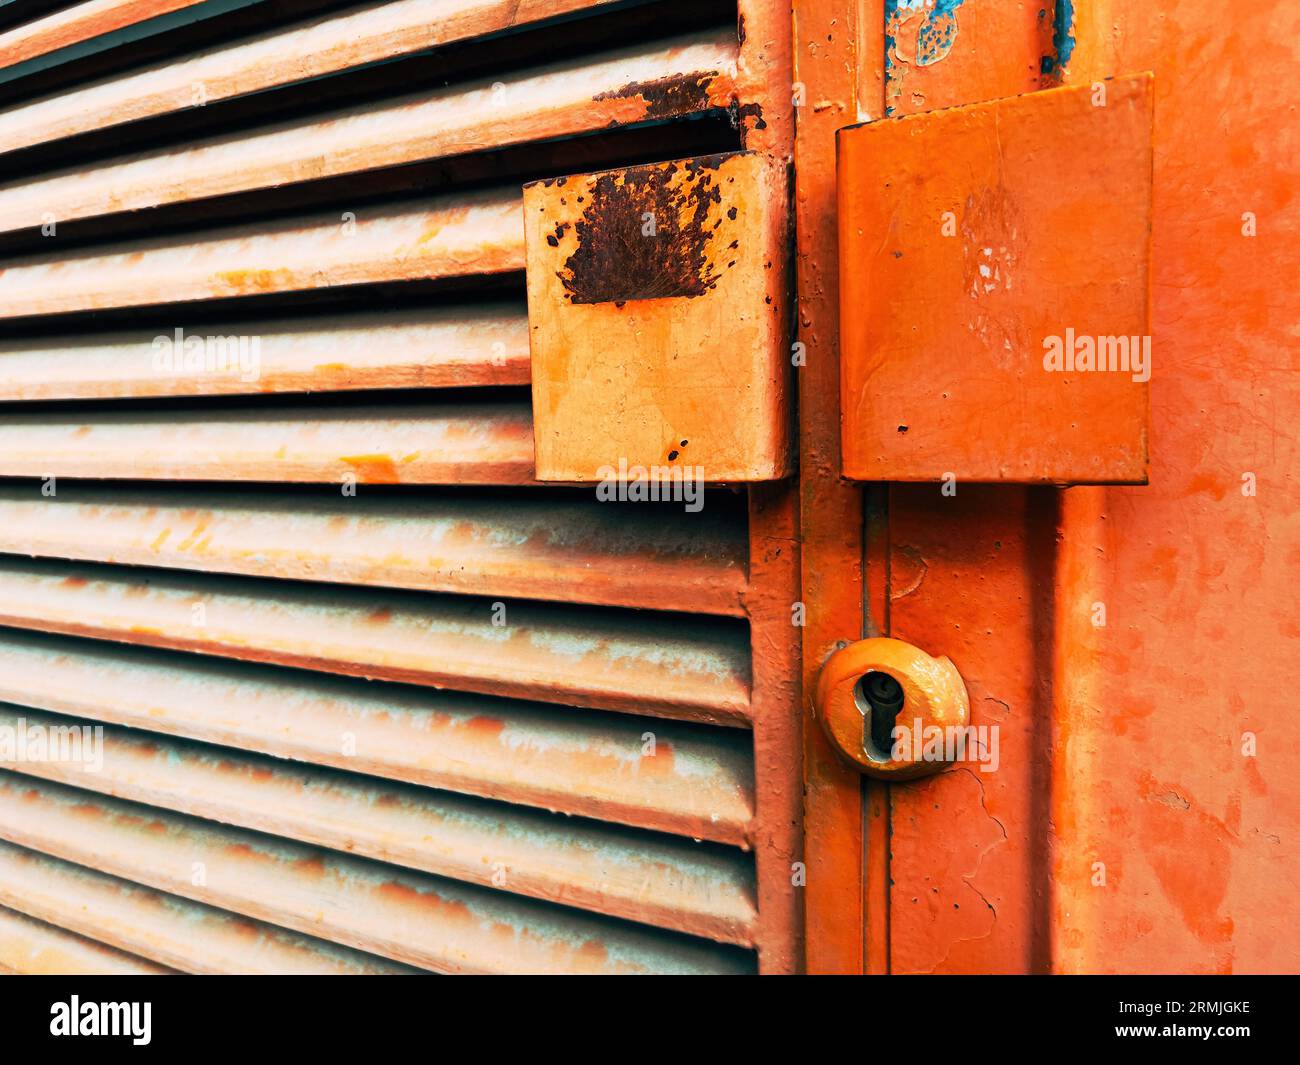 Ancienne porte industrielle métallique peinte en orange avec des marques de corrosion, mise au point sélective Banque D'Images